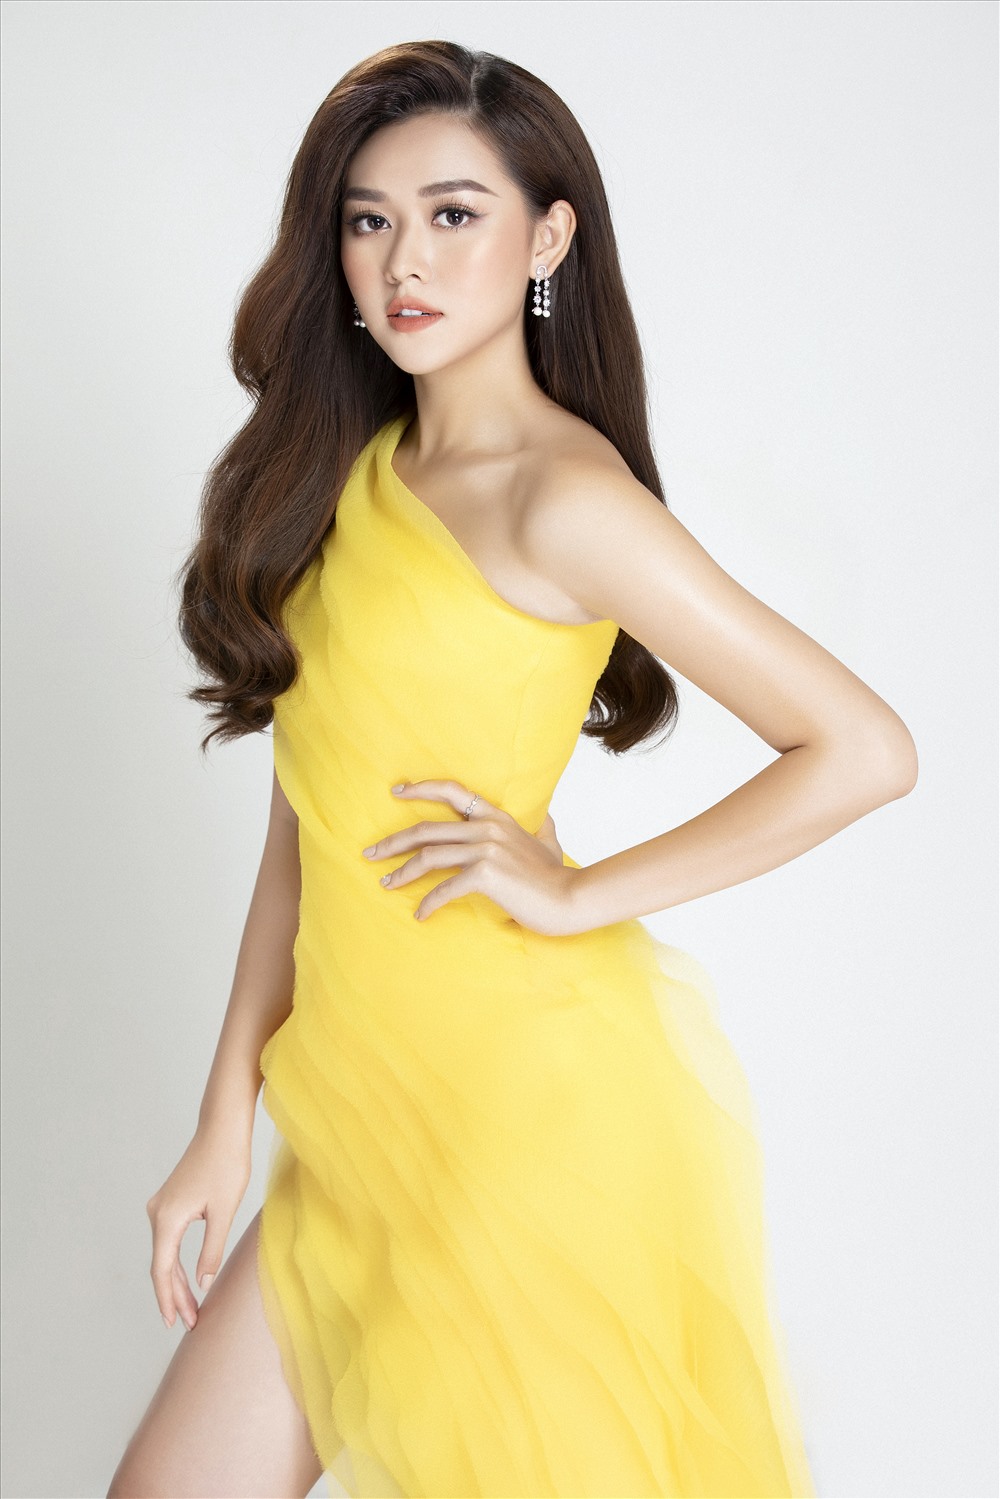 Vừa qua, thông tin về việc Á hậu Tường San chính thức trở thành đại diện Việt Nam tại cuộc thi Hoa hậu Quốc Tế - Miss International 2019 được công bố nhận được sự ủng hộ đông đảo của khán giả trong nước và cả quốc tế. Ảnh: Lê Thiện Viễn.